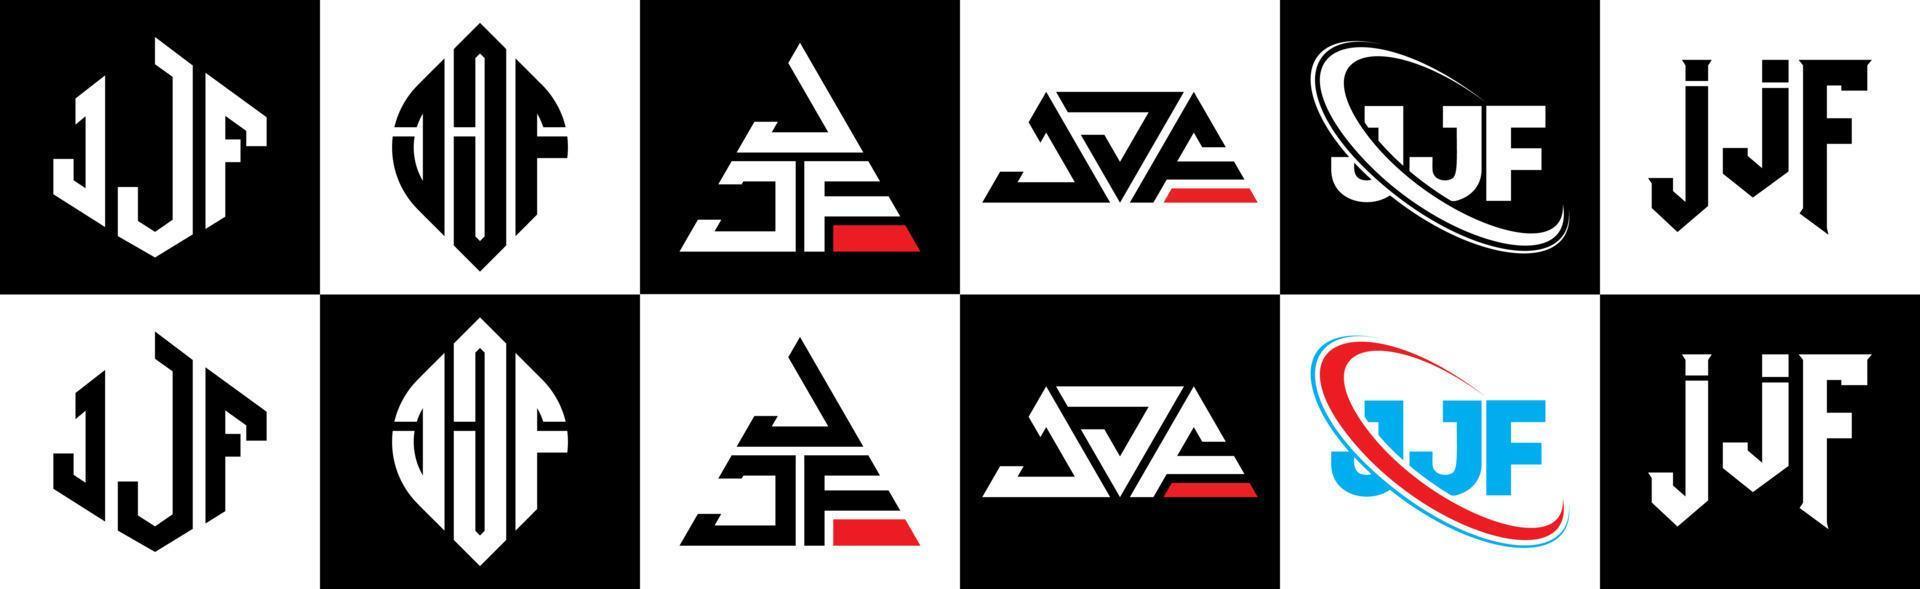 jjf-Buchstaben-Logo-Design in sechs Stilen. jjf polygon, kreis, dreieck, sechseck, flacher und einfacher stil mit schwarz-weißem buchstabenlogo in einer zeichenfläche. JJF minimalistisches und klassisches Logo vektor